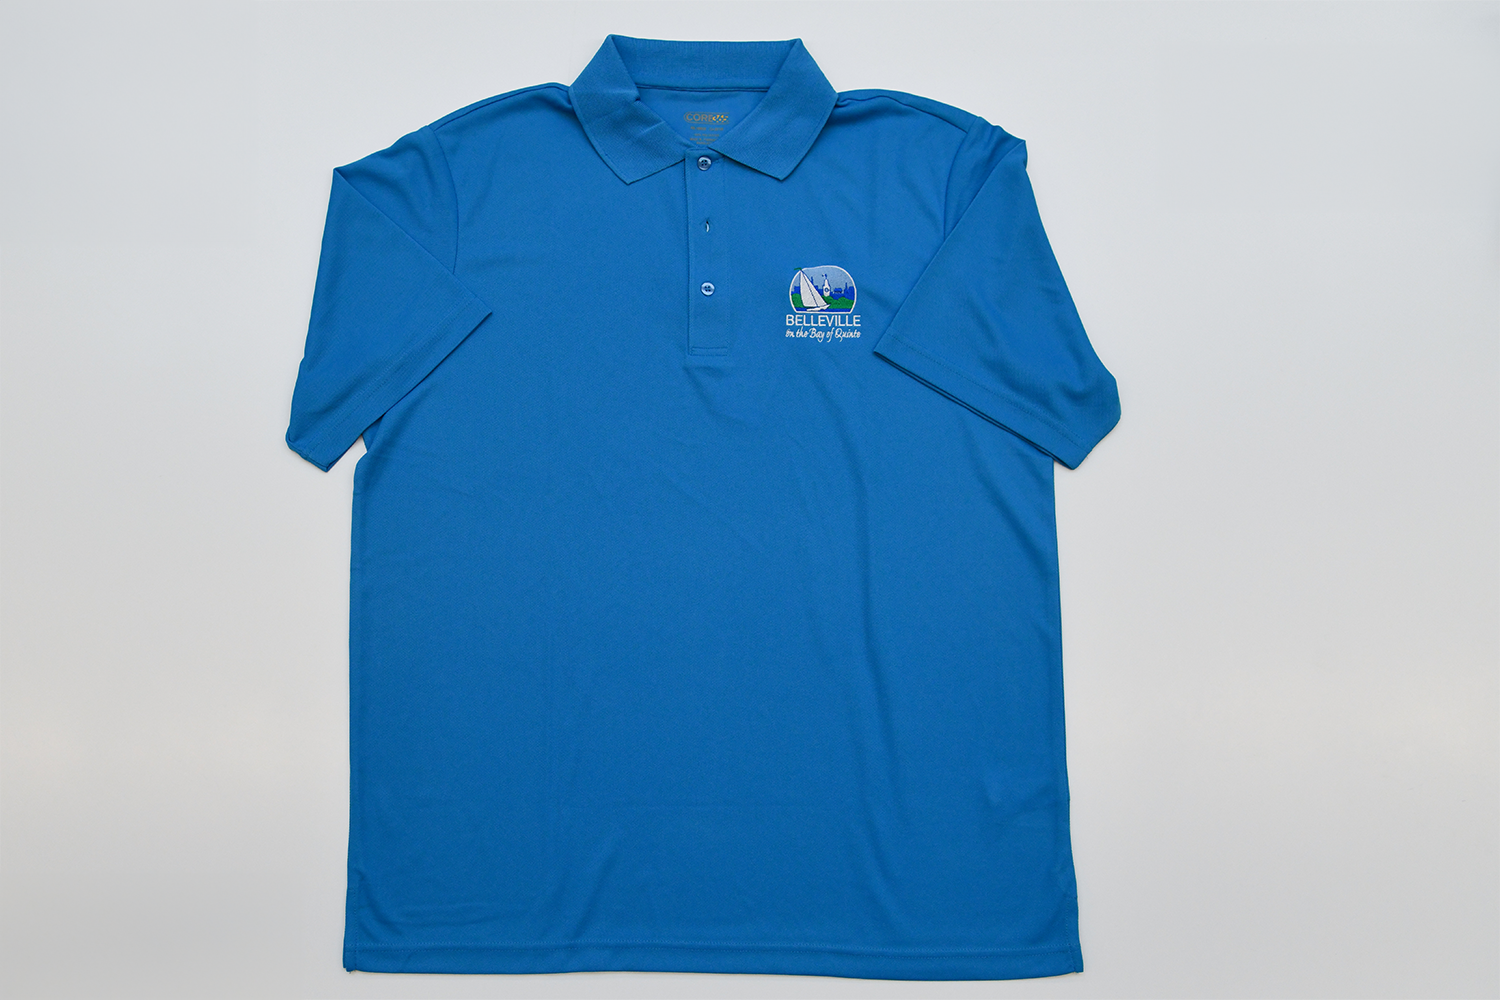 Blue City of Belleville golf shirt.